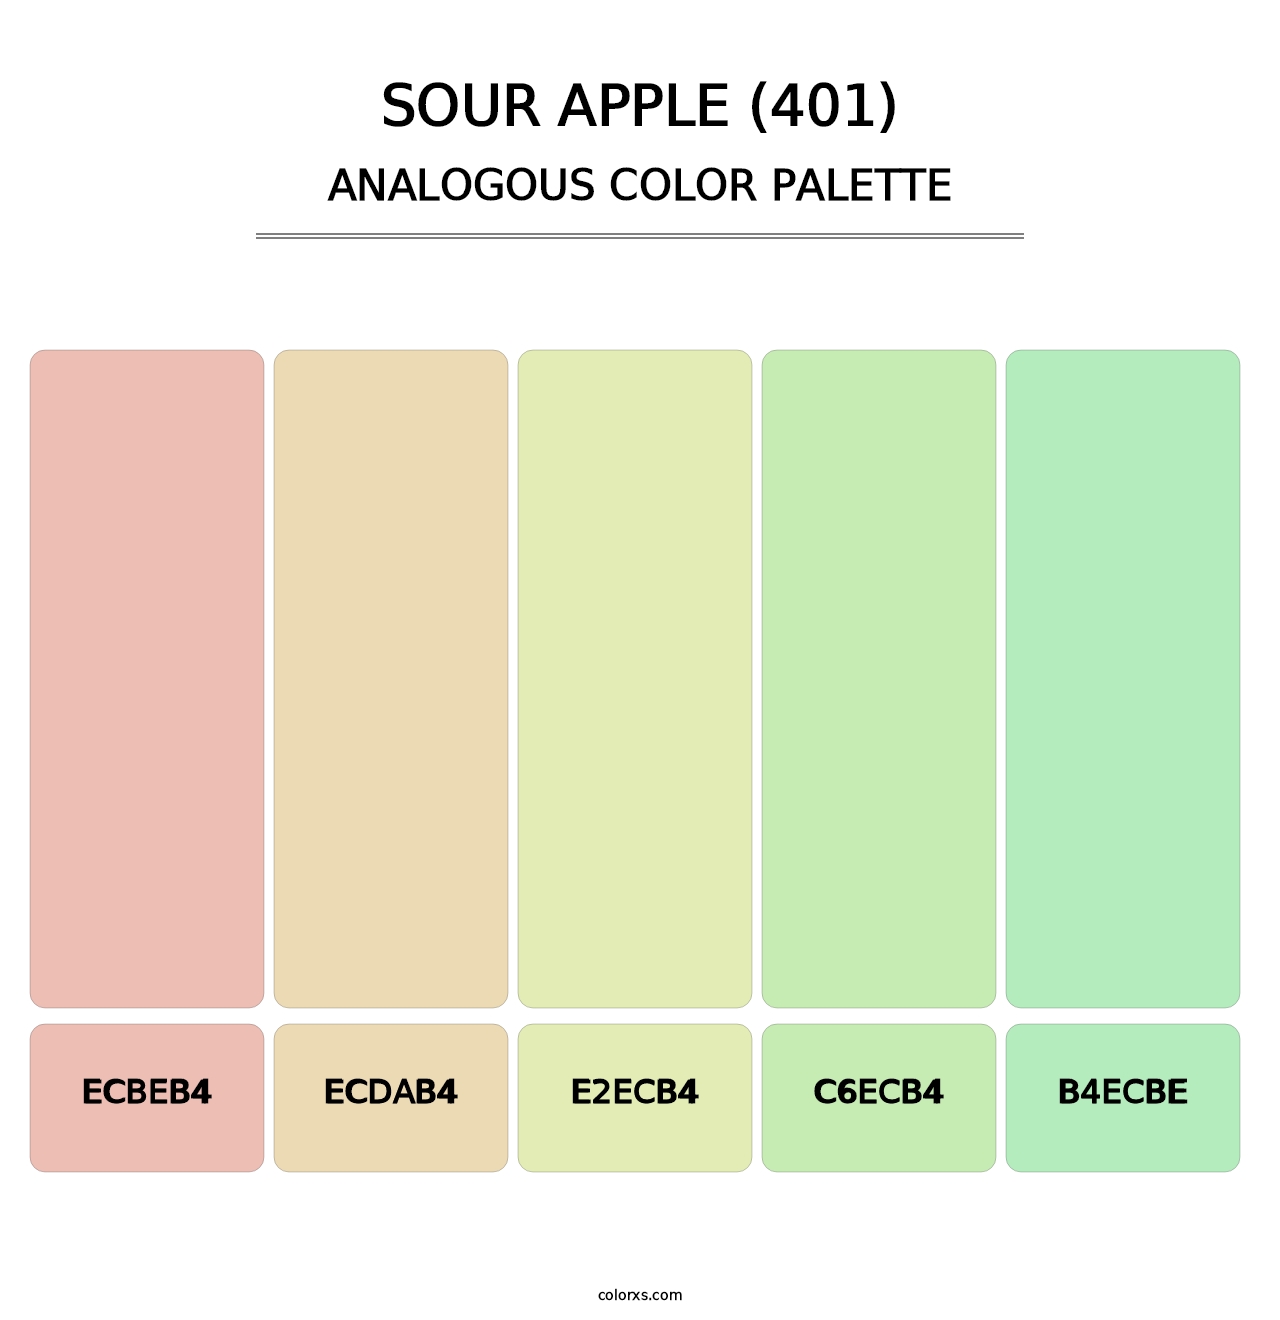 Sour Apple (401) - Analogous Color Palette